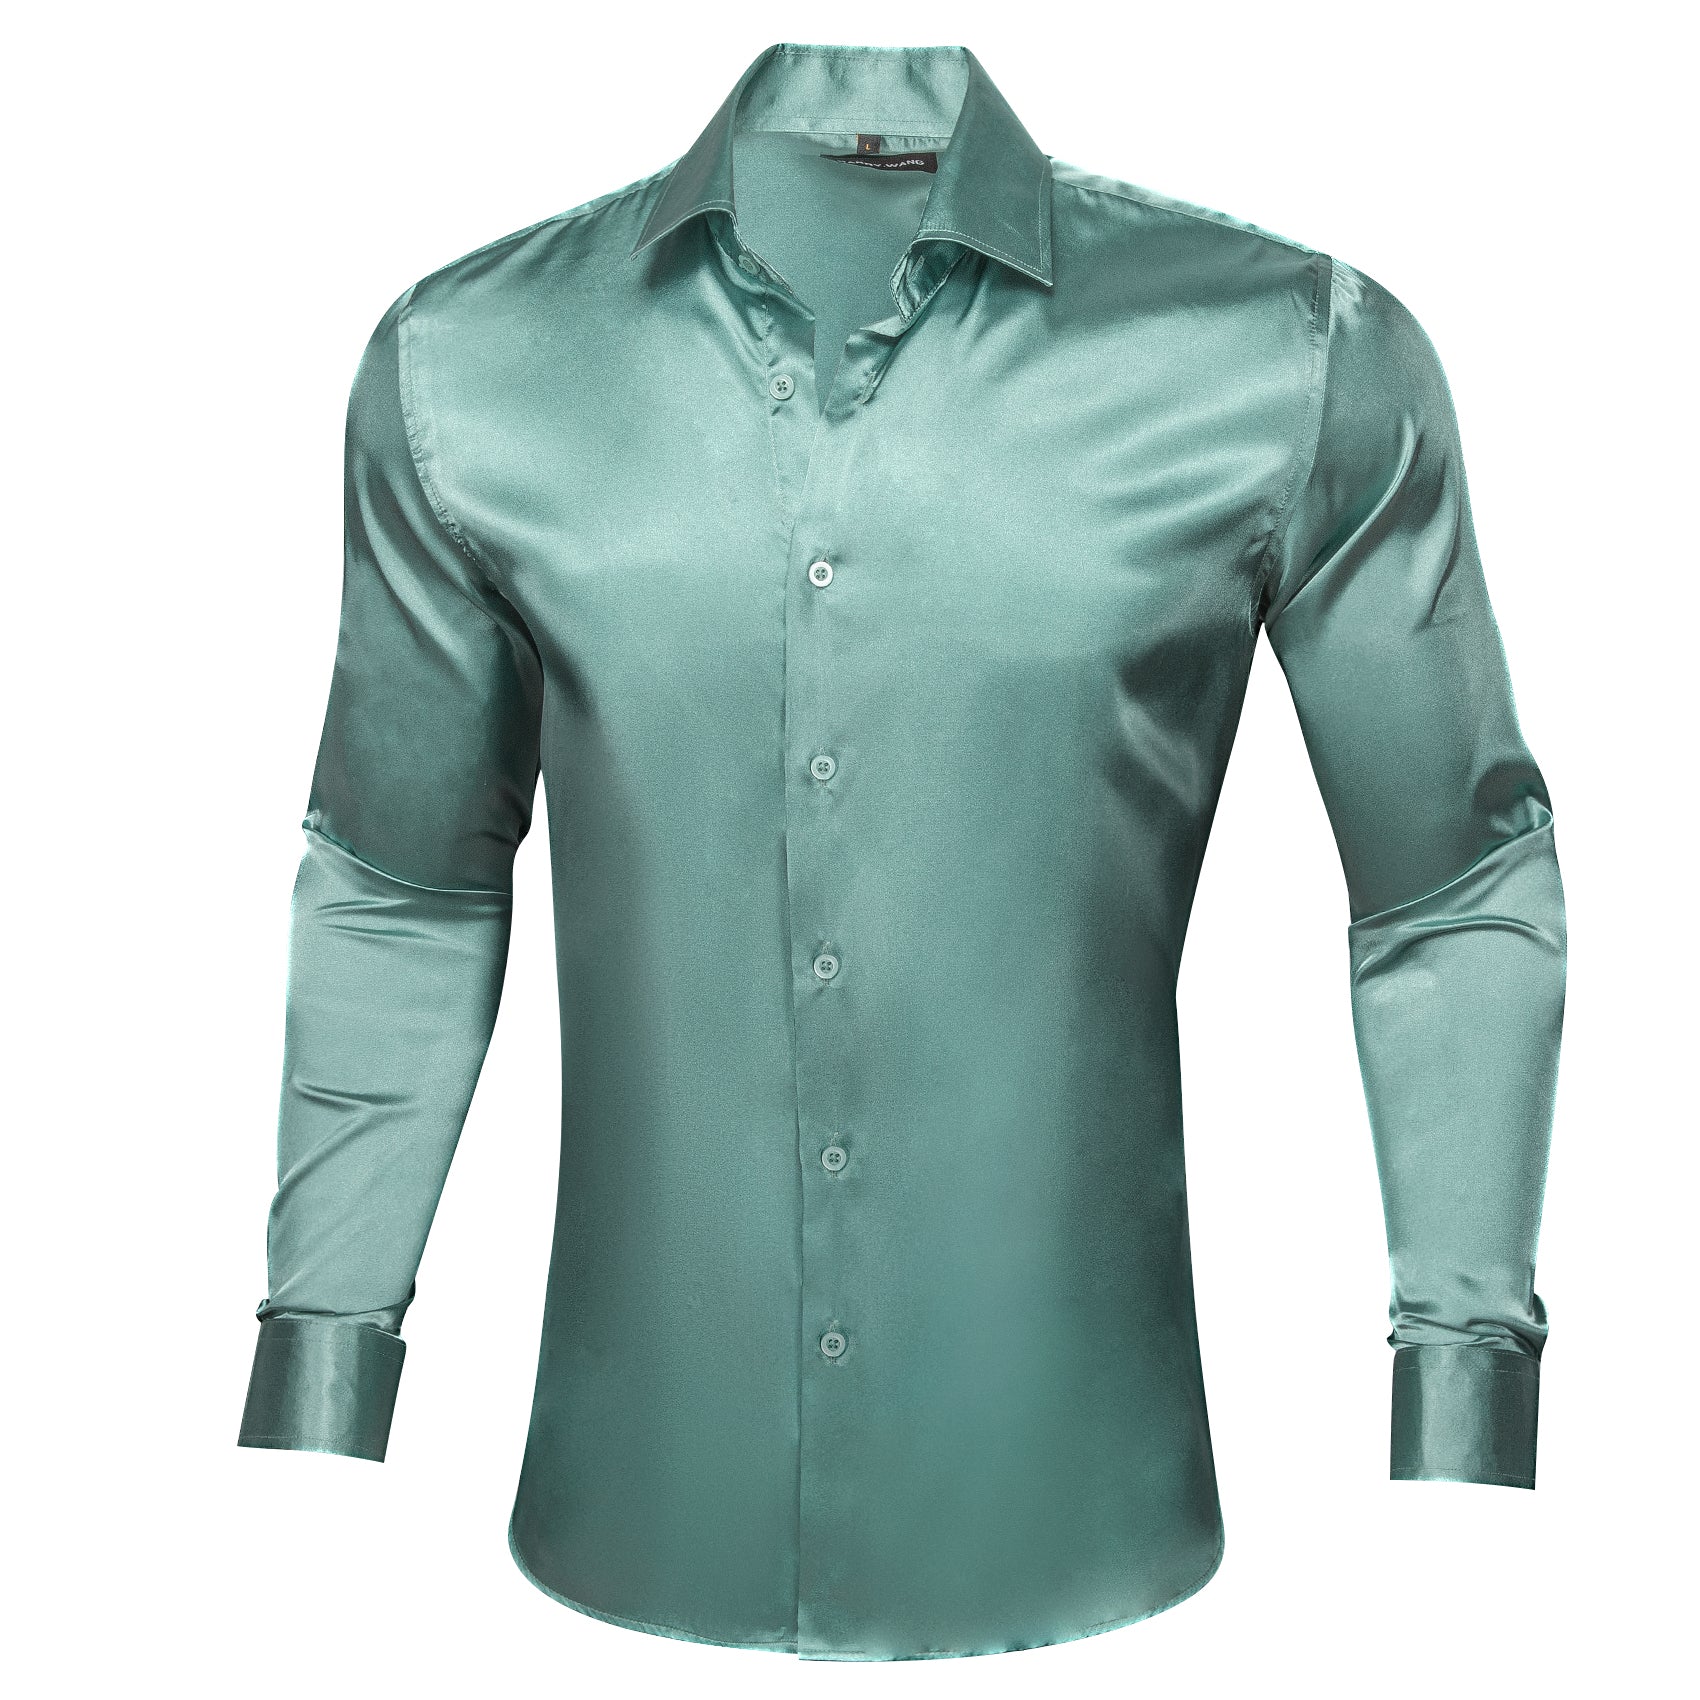 Barry.wang Teal Blue Solid Silk Shirt